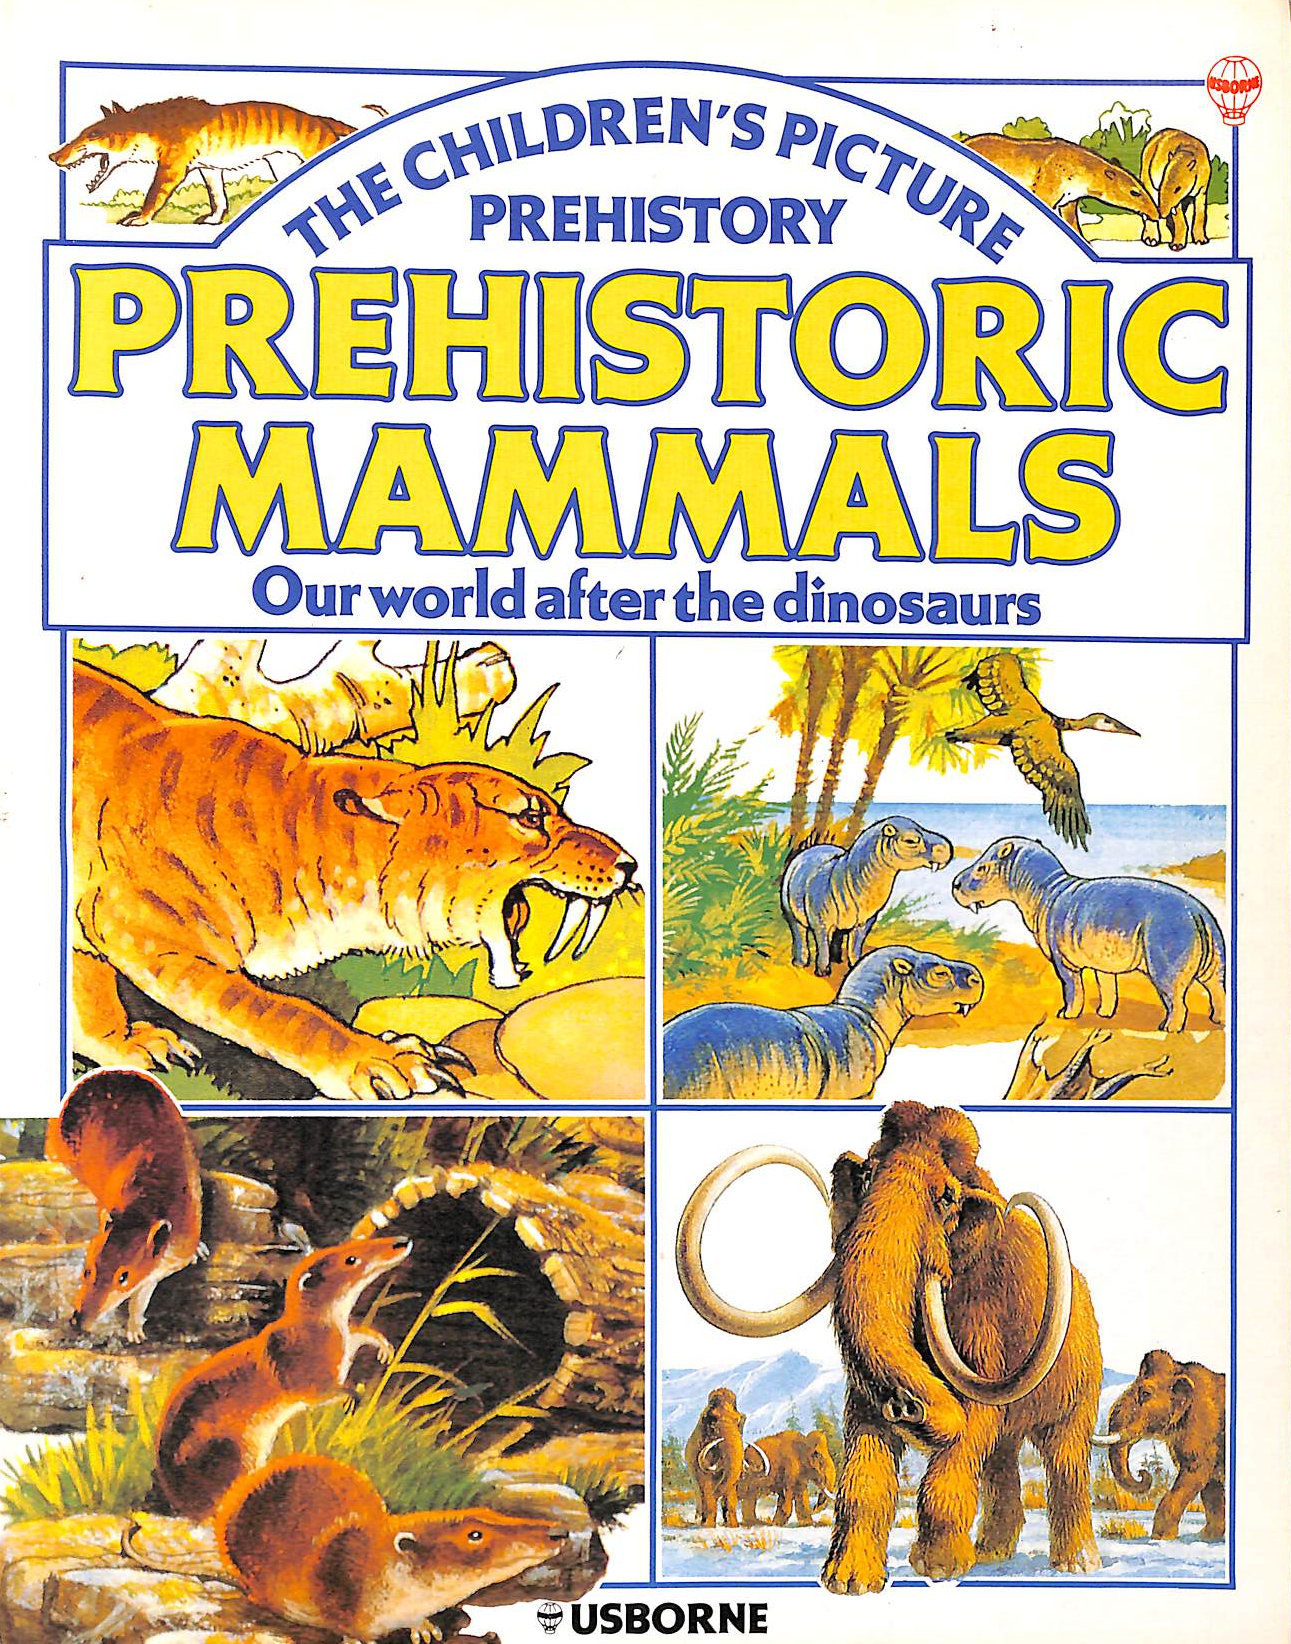 MCCORD, ANNE - Prehistoric Mammals (Picture history)